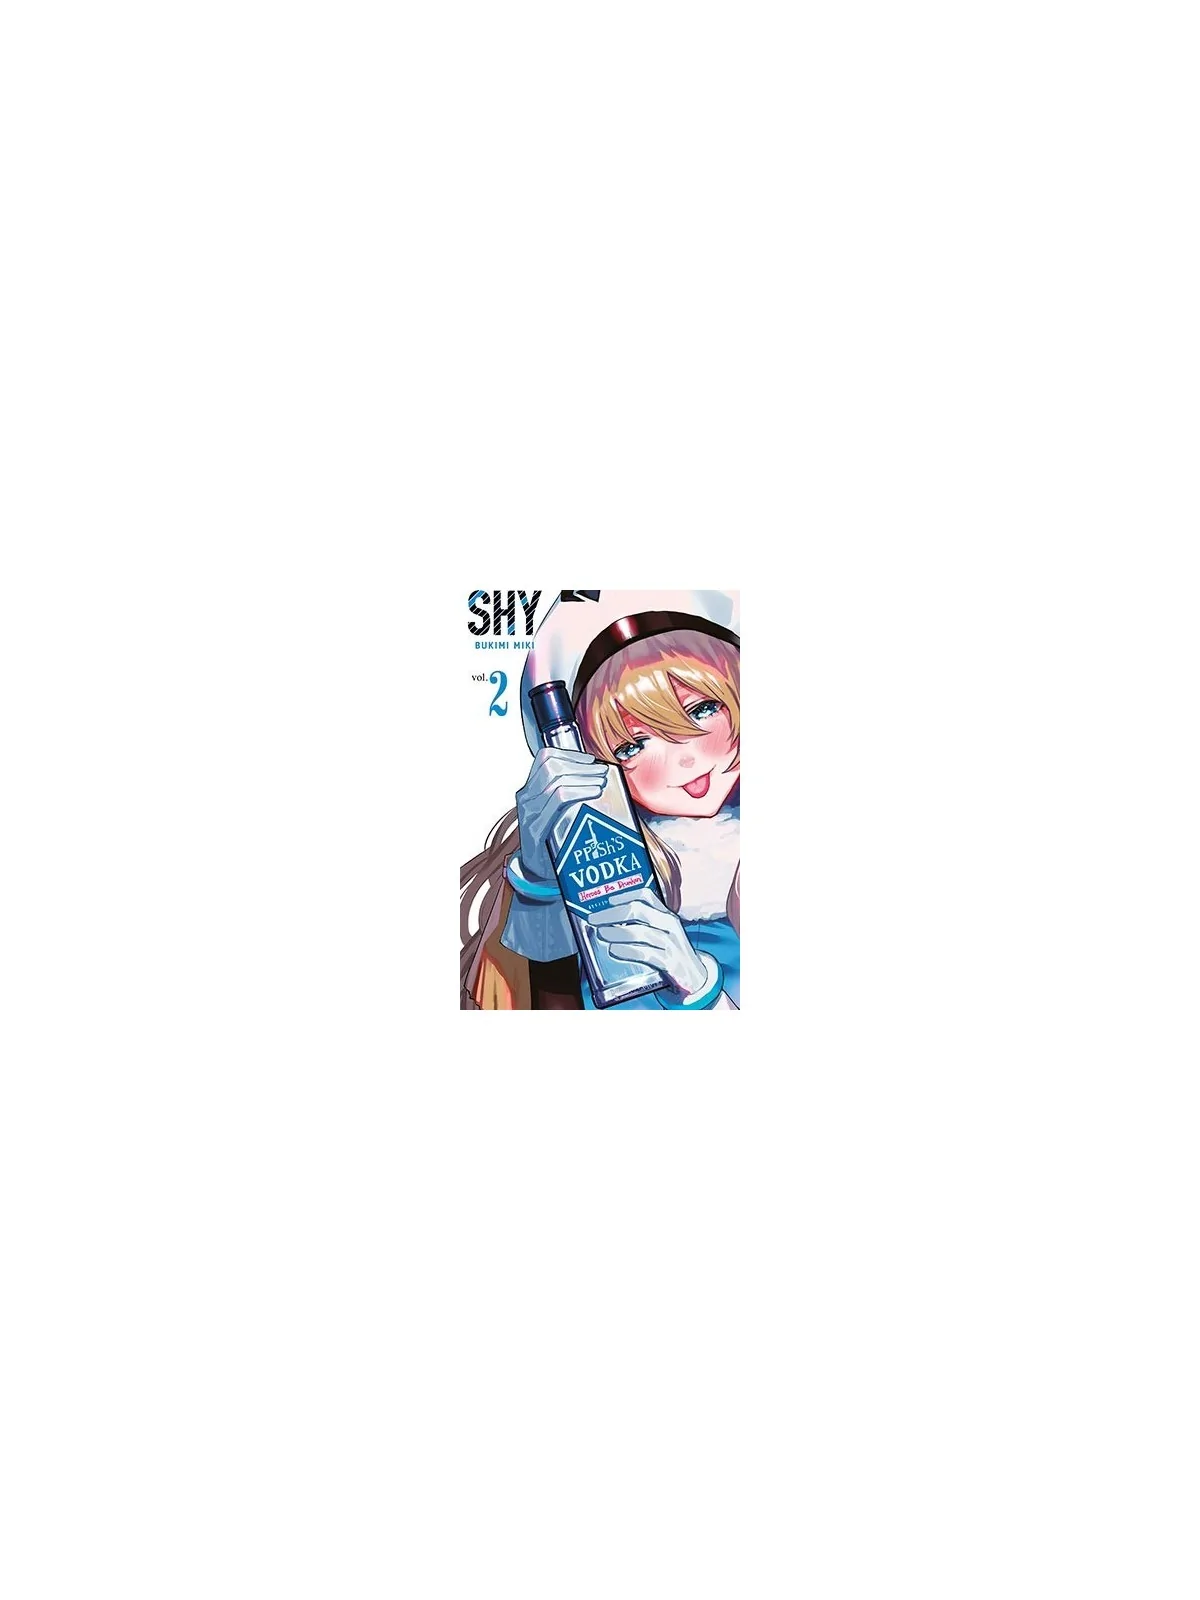 Comprar Shy 02 barato al mejor precio 8,07 € de Panini Comics